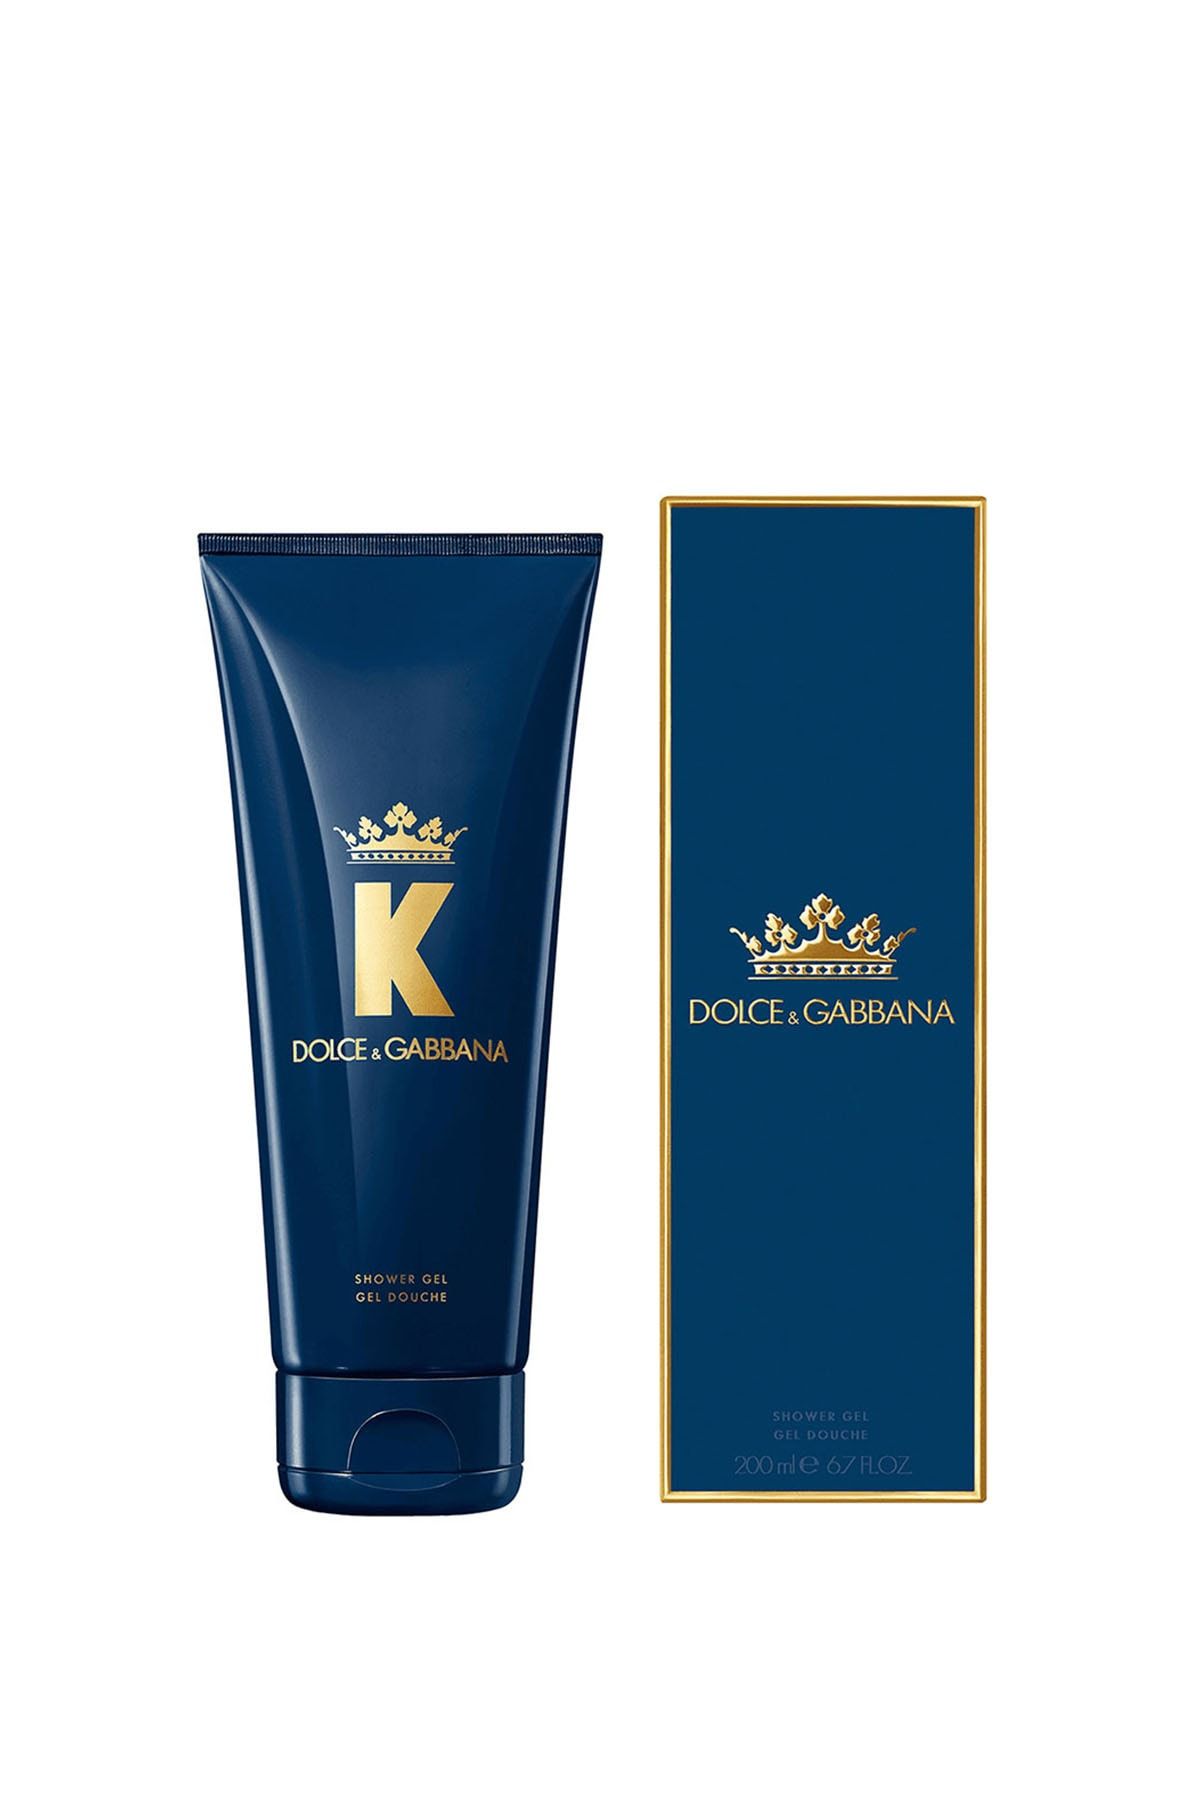 Dolce&Gabbana Dolce Gabbana 'k' Shower Gel 200 Ml